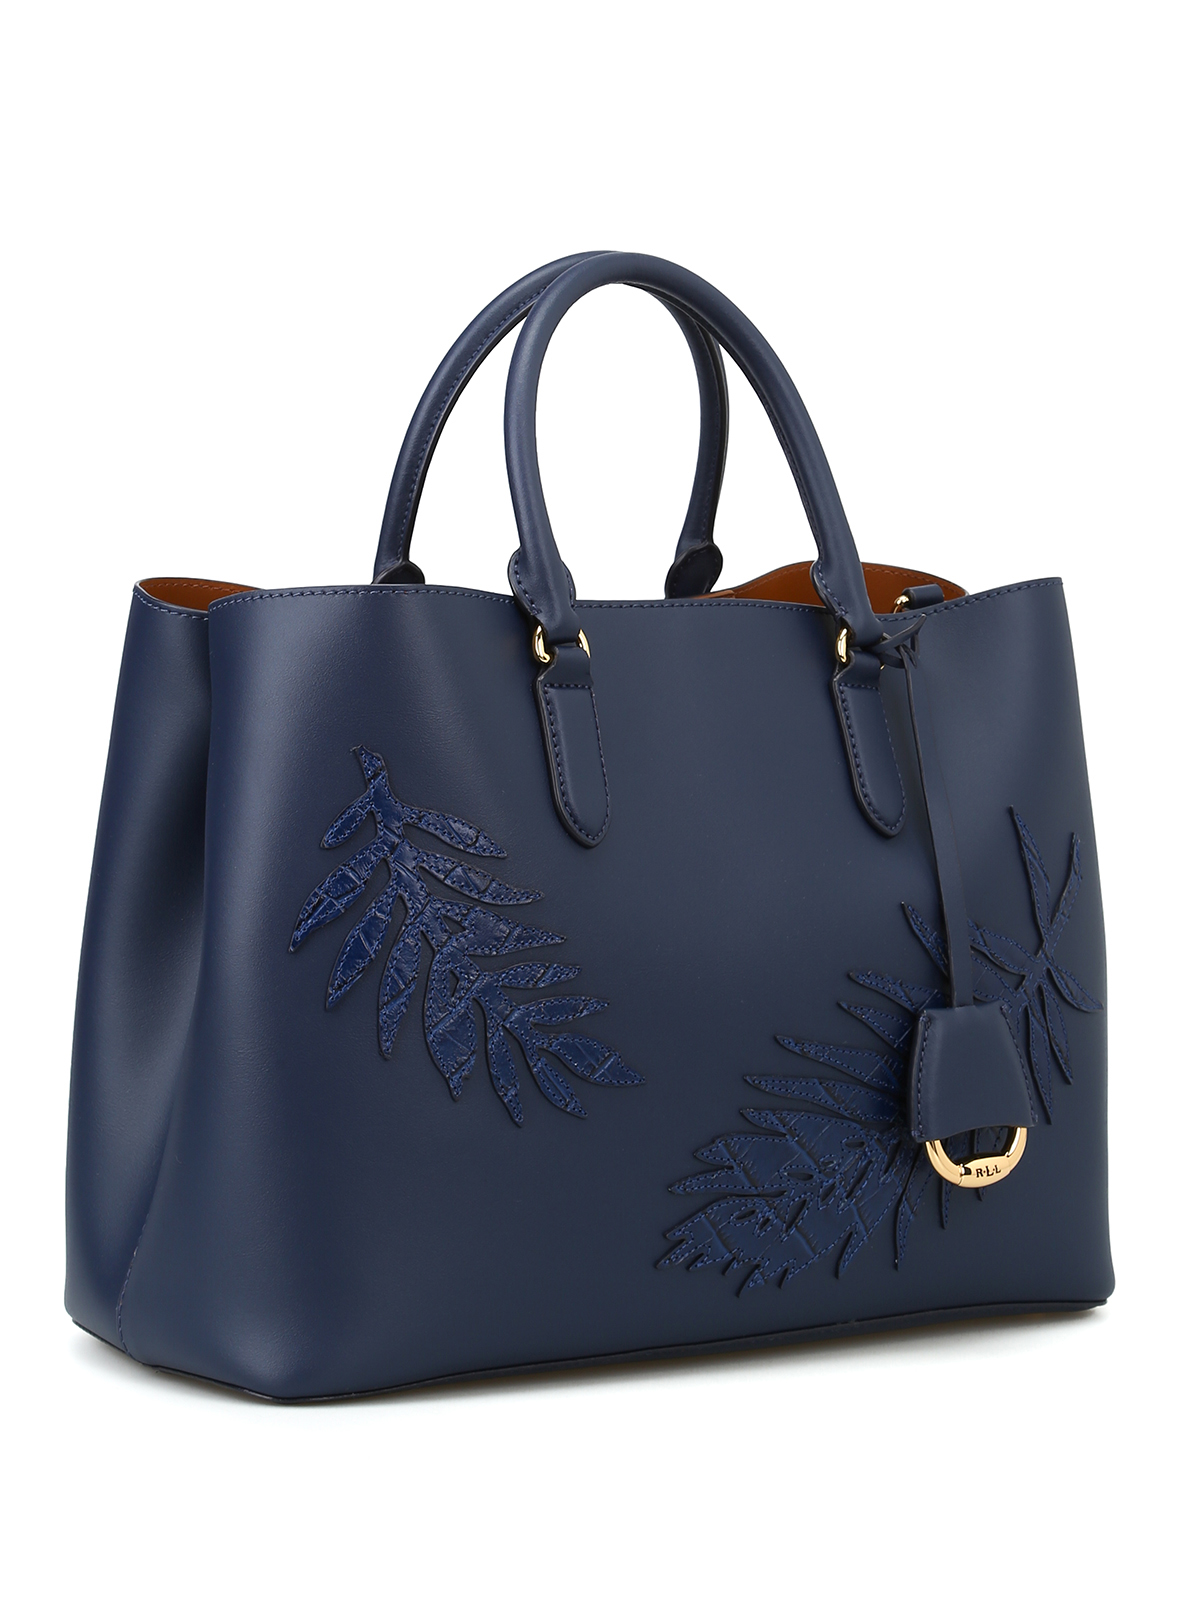 Handbags Ralph Lauren, Style code: 431876725004-C267